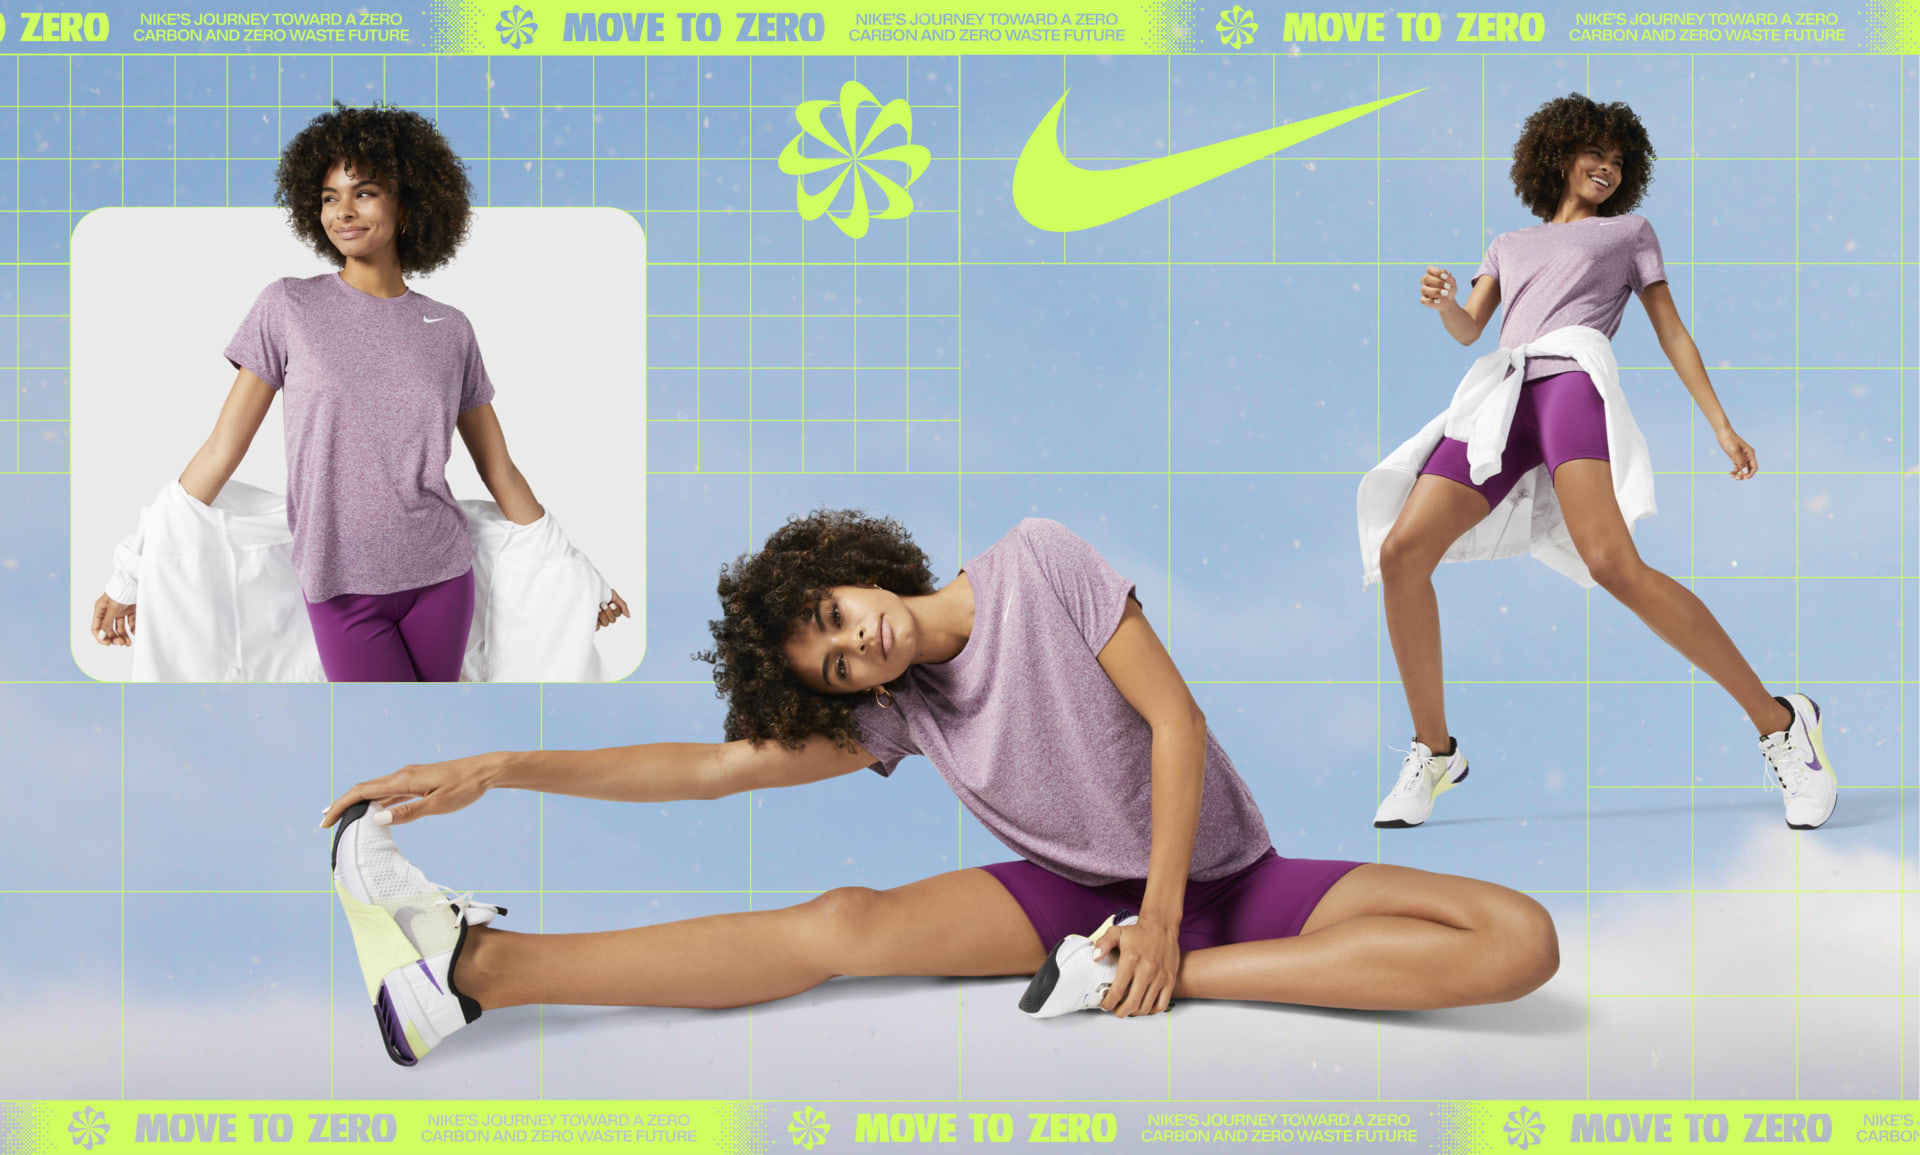 Nike Schreiner Women's USA Dri-FIT Cotton Tee - Schreiner